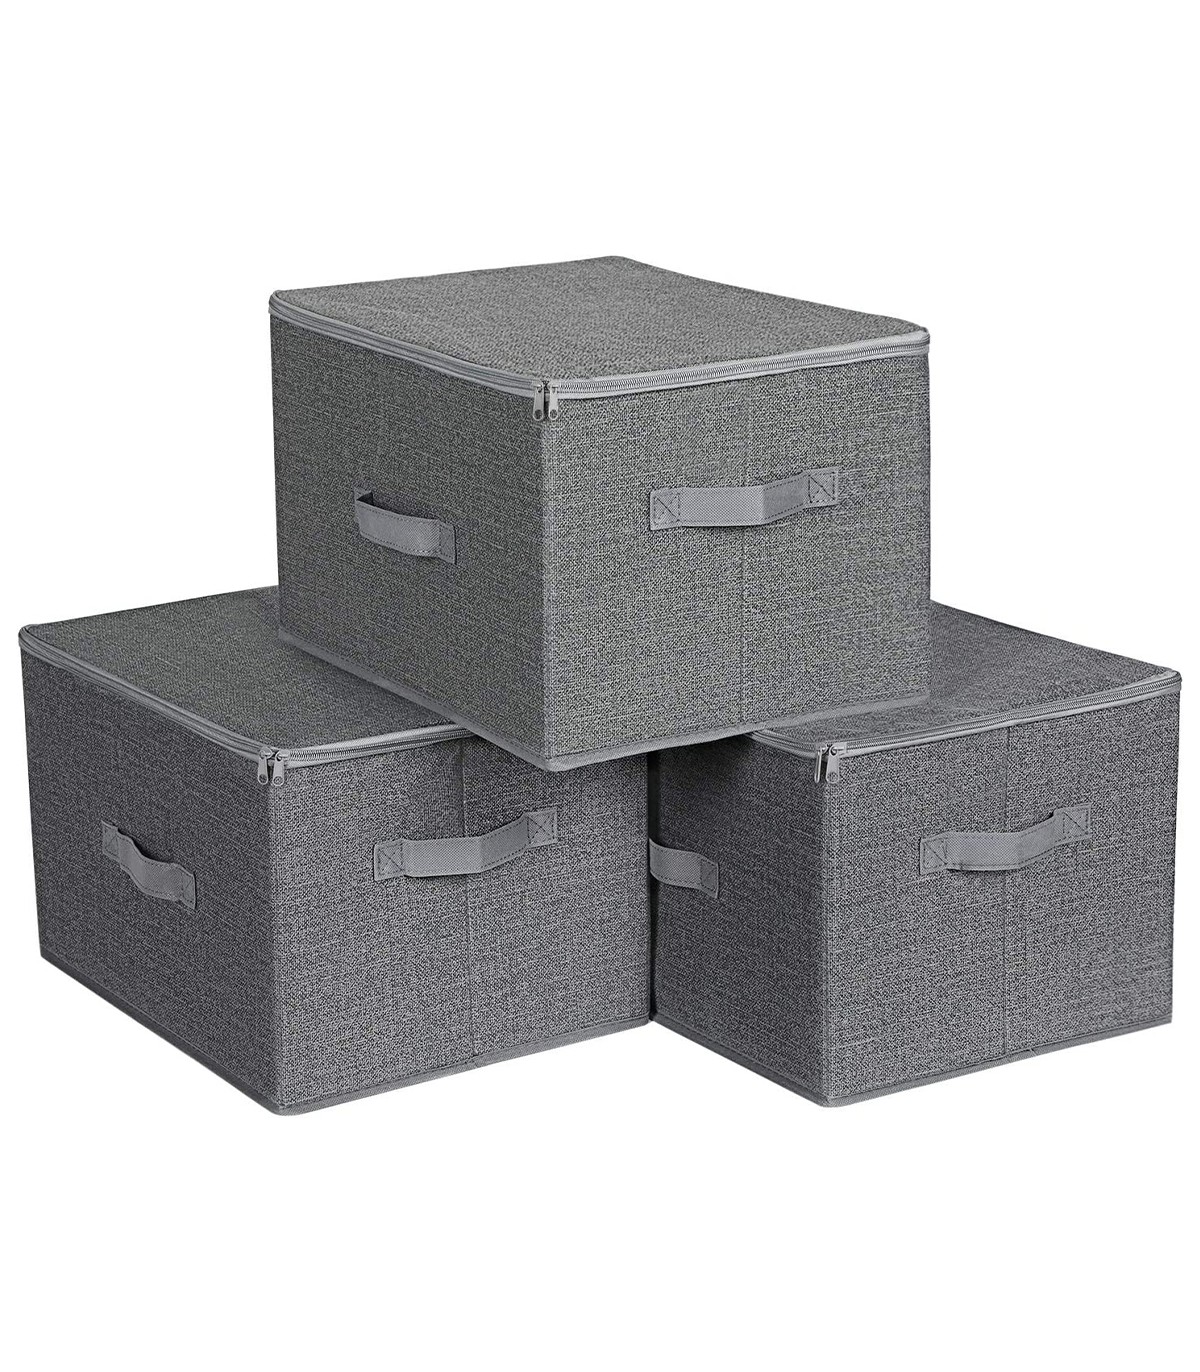 Boîte de rangement en tissu gris rigide et pliable avec couvercle- 25x35x45  - ON RANGE TOUT